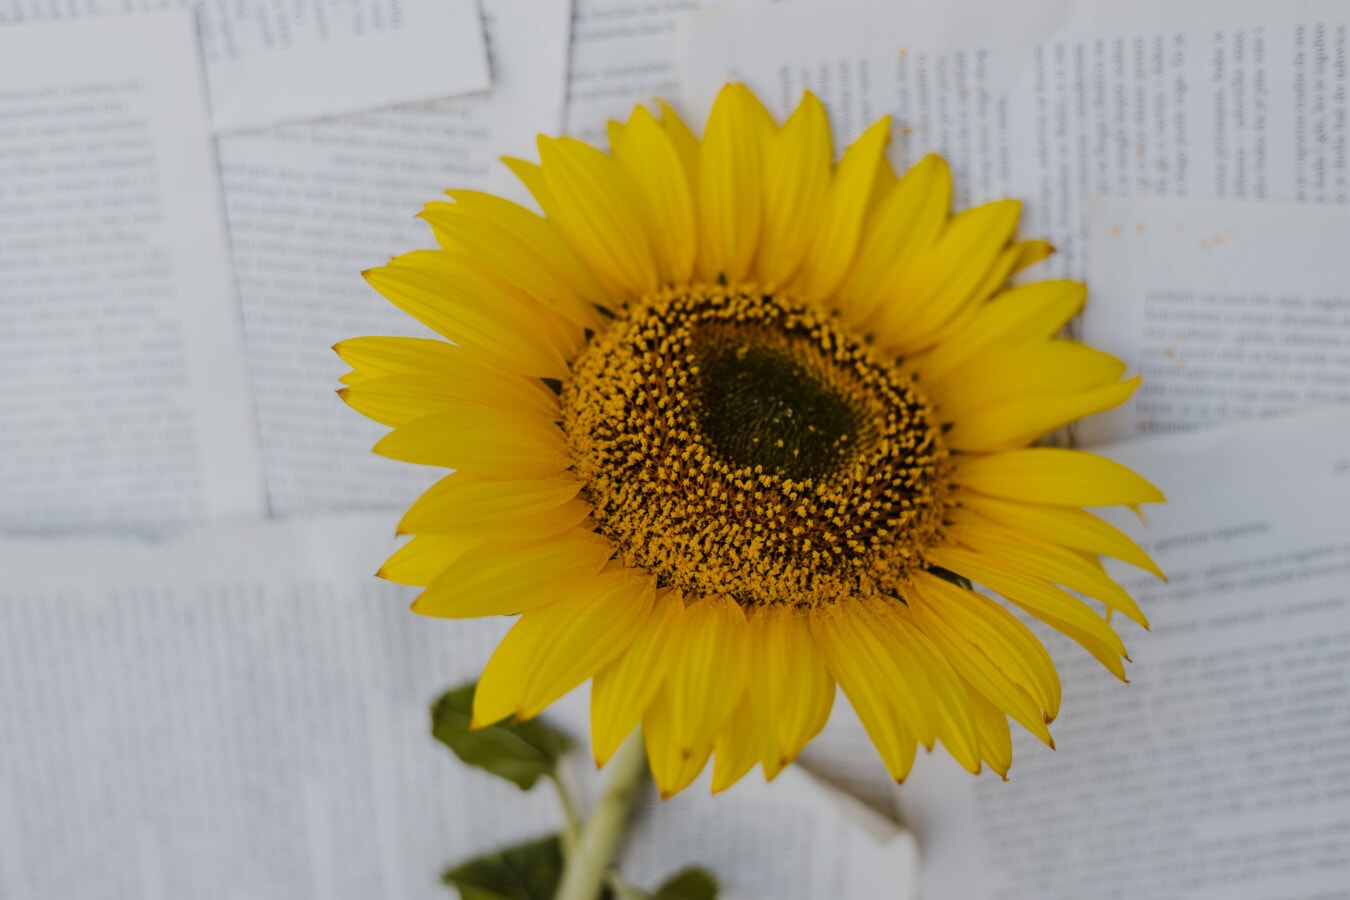 suncokret, novine, papir, dekoracija, izbliza, žuta, cvijet, biljka, Sunce, na otvorenom